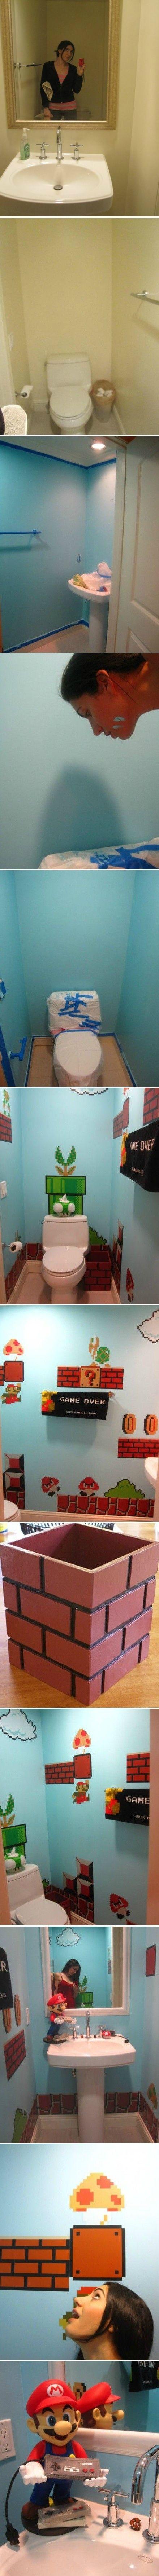 Переделка туалета в стиле Супер-Марио